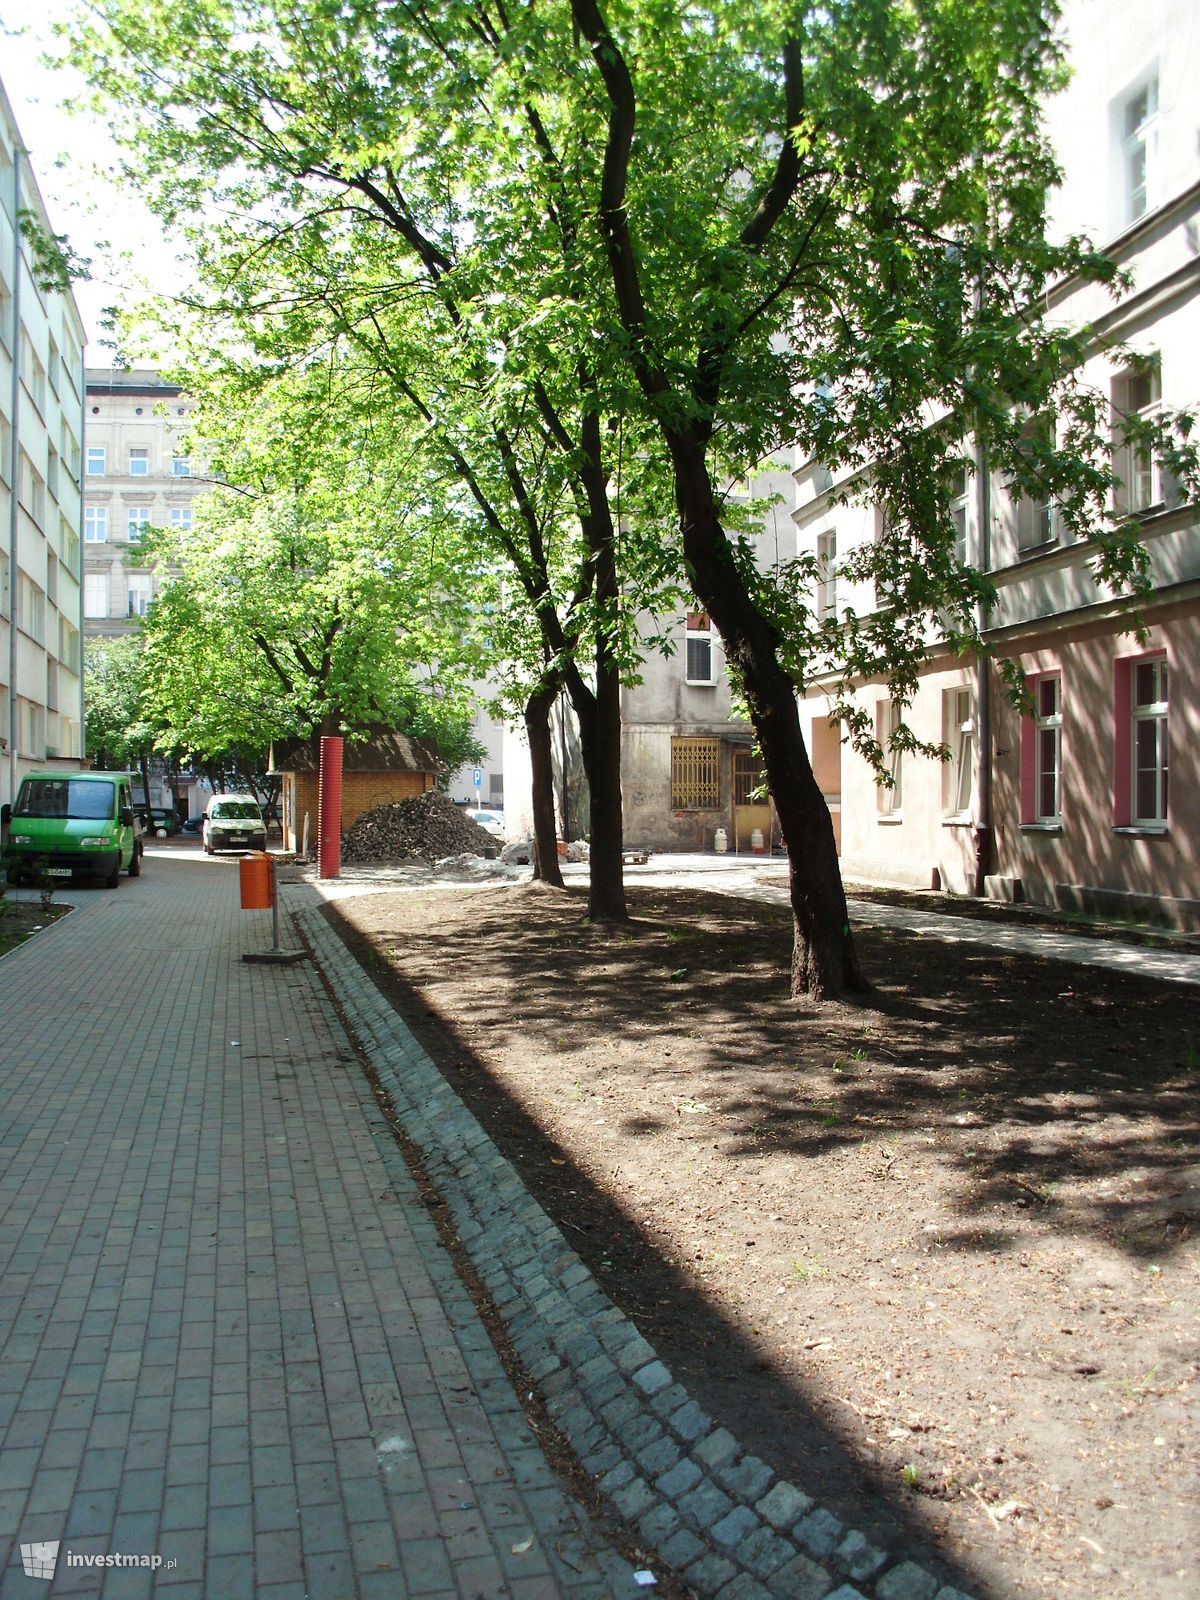 Zdjęcie [Wrocław] Rewitalizacja podwórka pomiędzy ulicami Brodatego/Chrobrego/Paulińska/Rydygiera fot. worldinmyeyes 